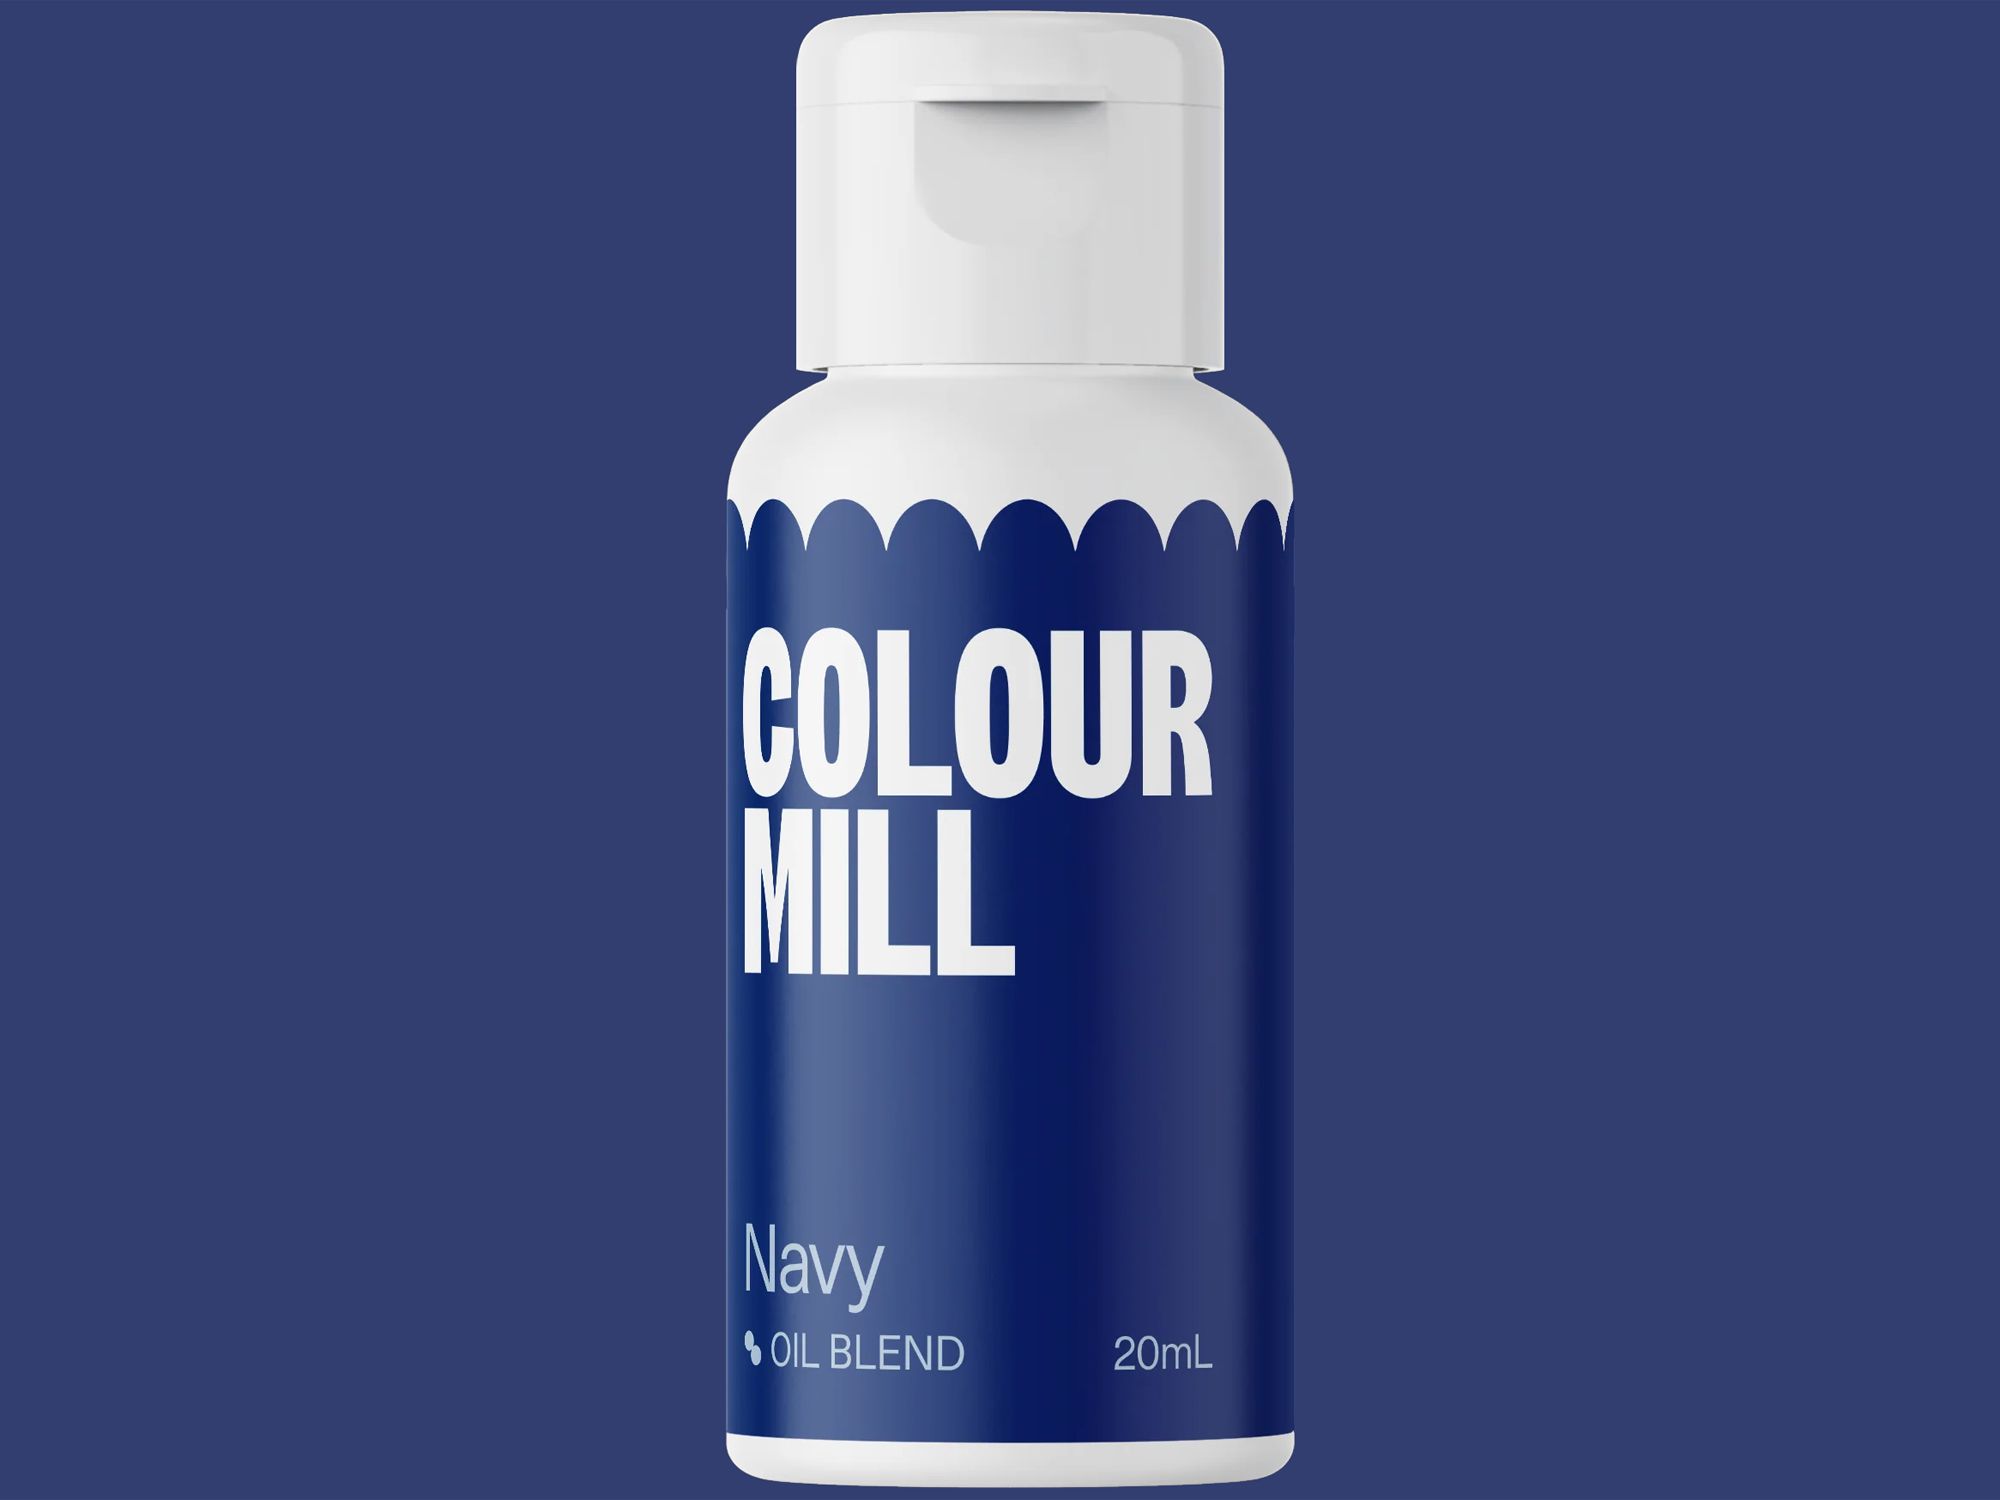 Colour Mill Navy (Oil Blend) 20ml